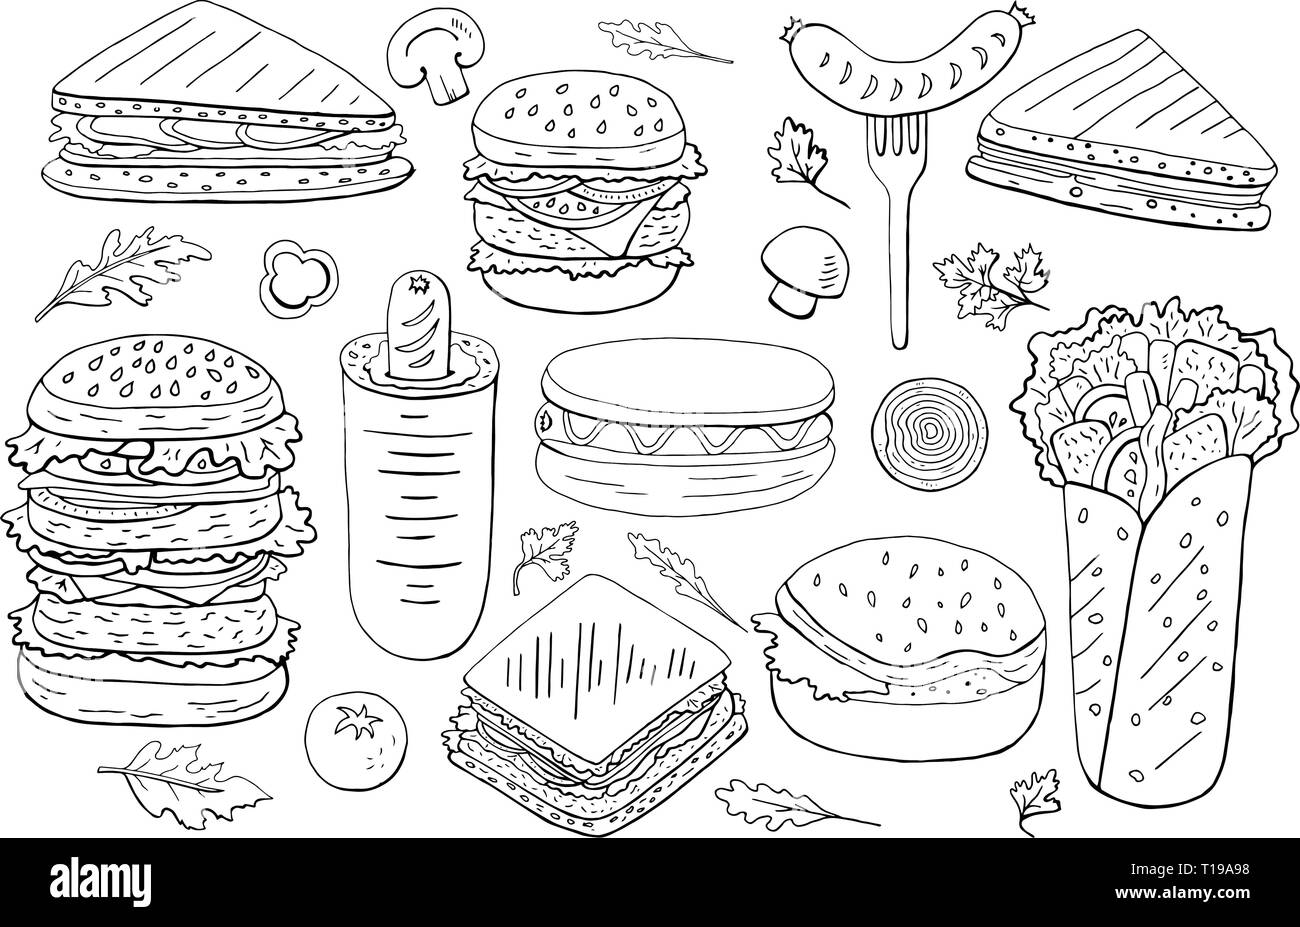 Jeu de sandwichs et burgers differen noir et blanc Illustration de Vecteur